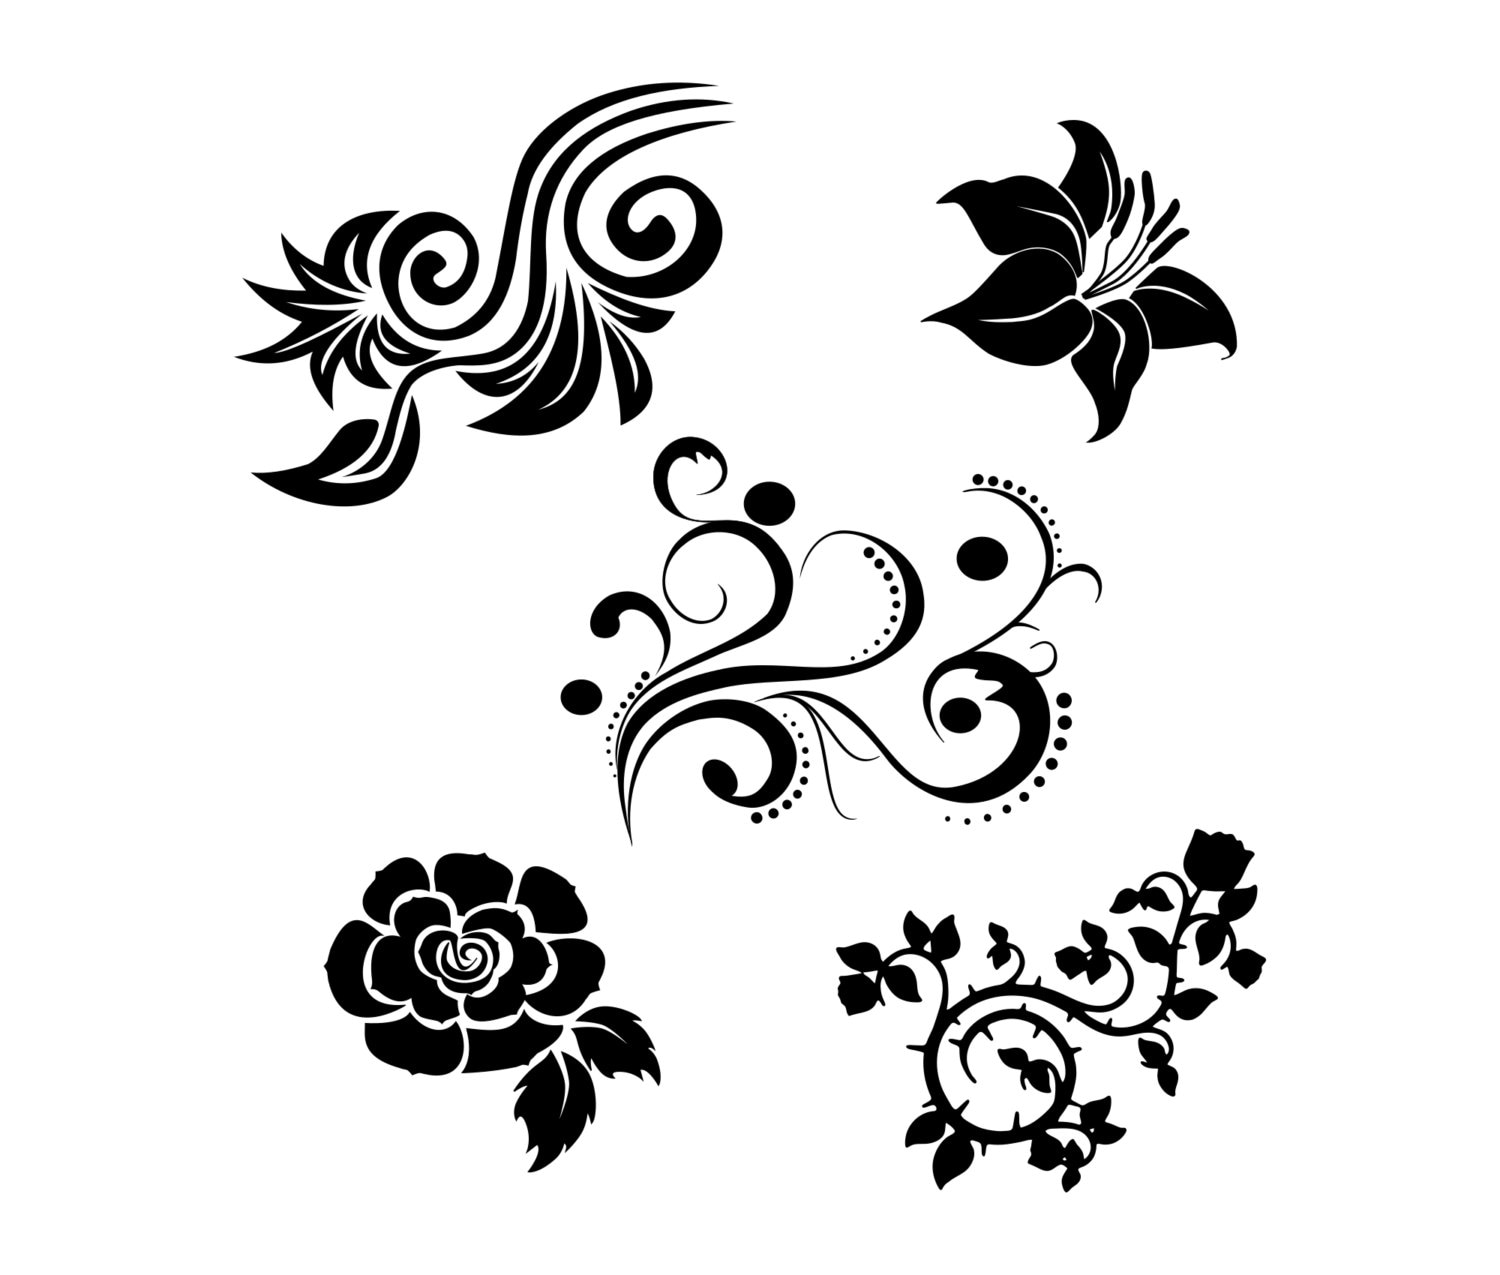 Download Flower SVG bundle Vector art Clipart Cut files for cricut